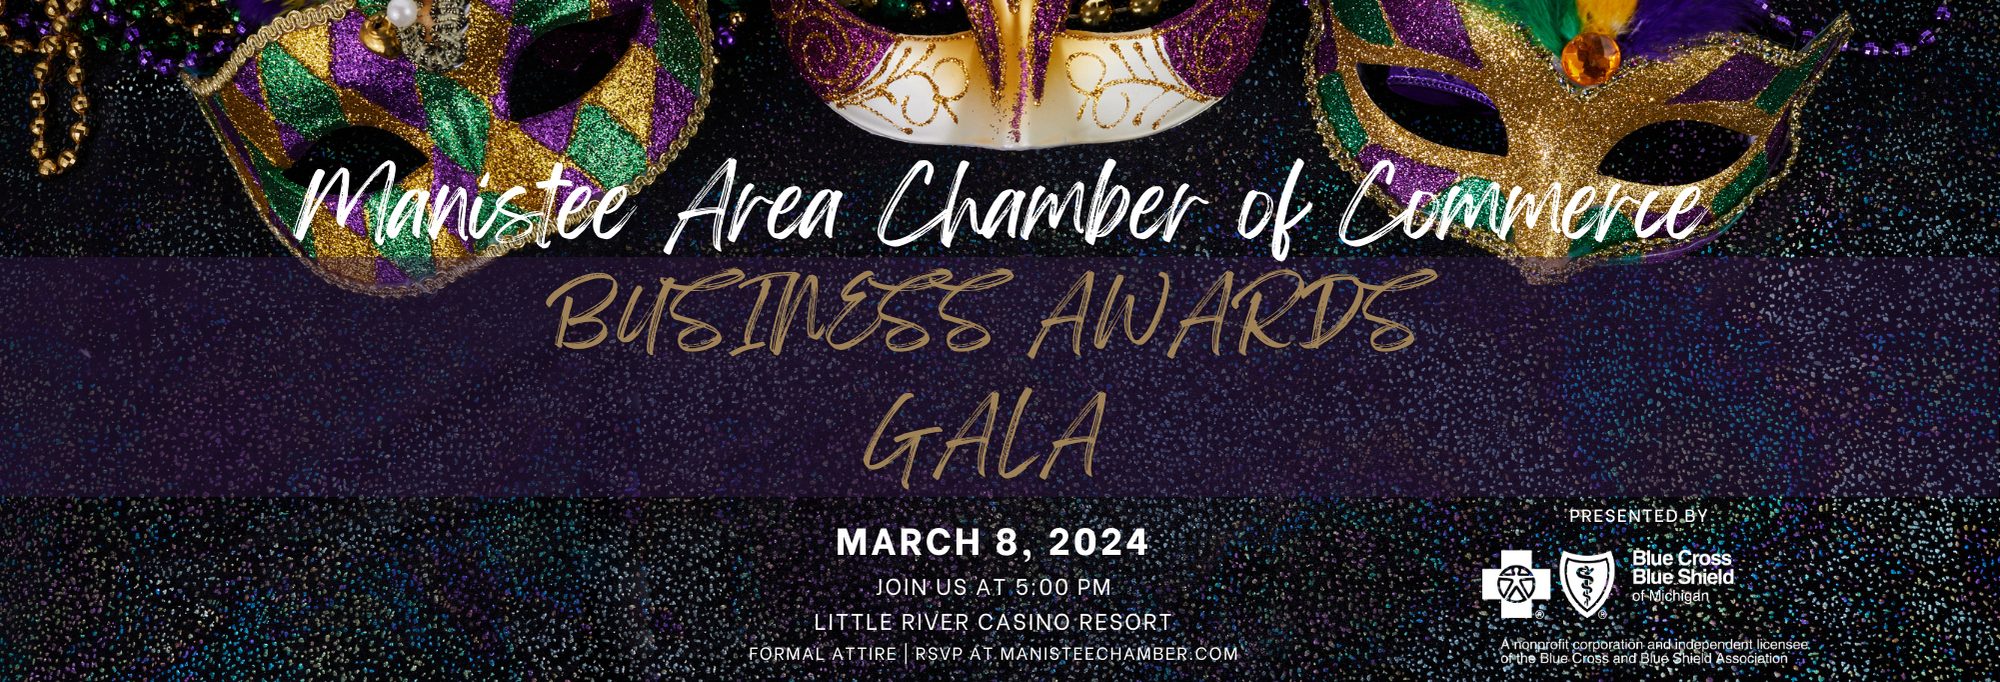 Business Awards Gala 2024